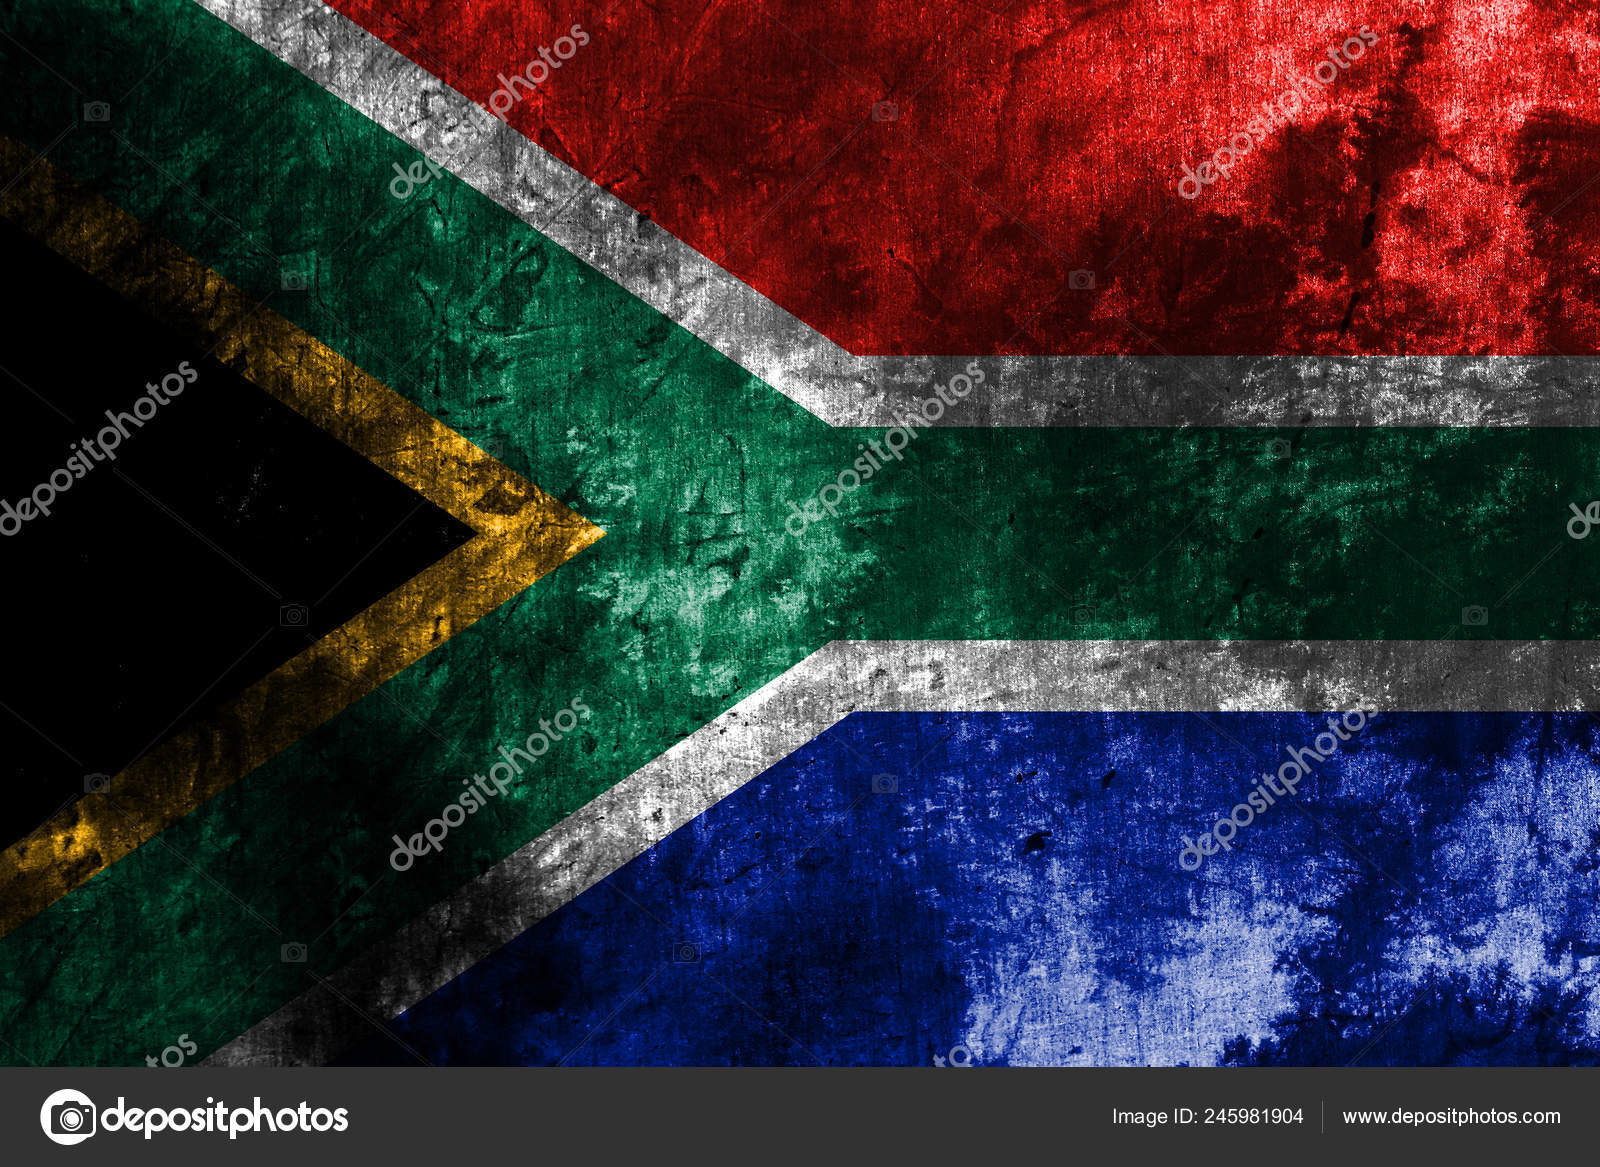 370 South Africa ideas  africa south africa south african air force